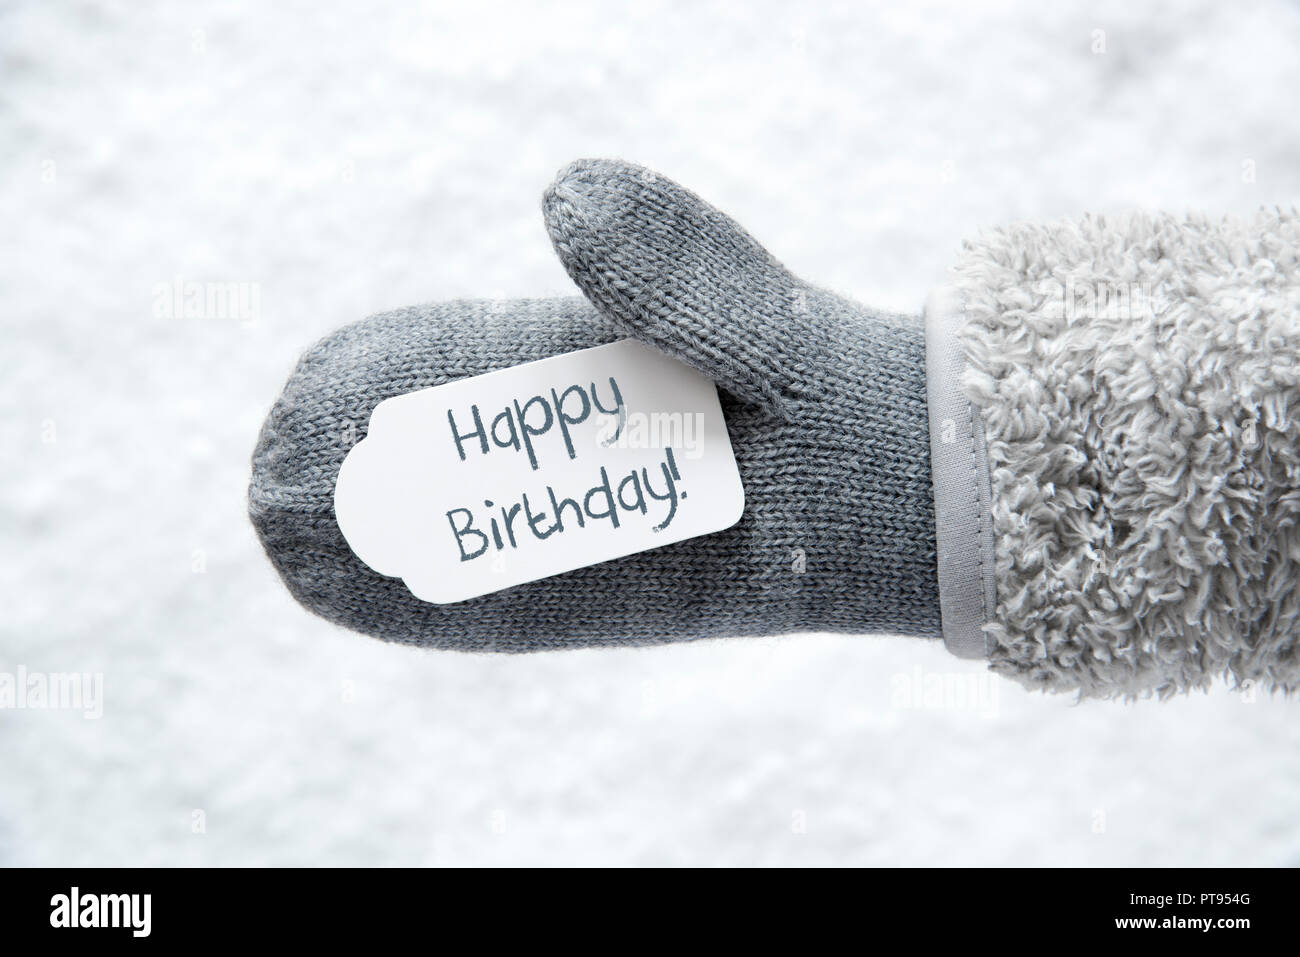 Wolle Handschuh, Label, Schnee, Text alles Gute zum Geburtstag  Stockfotografie - Alamy